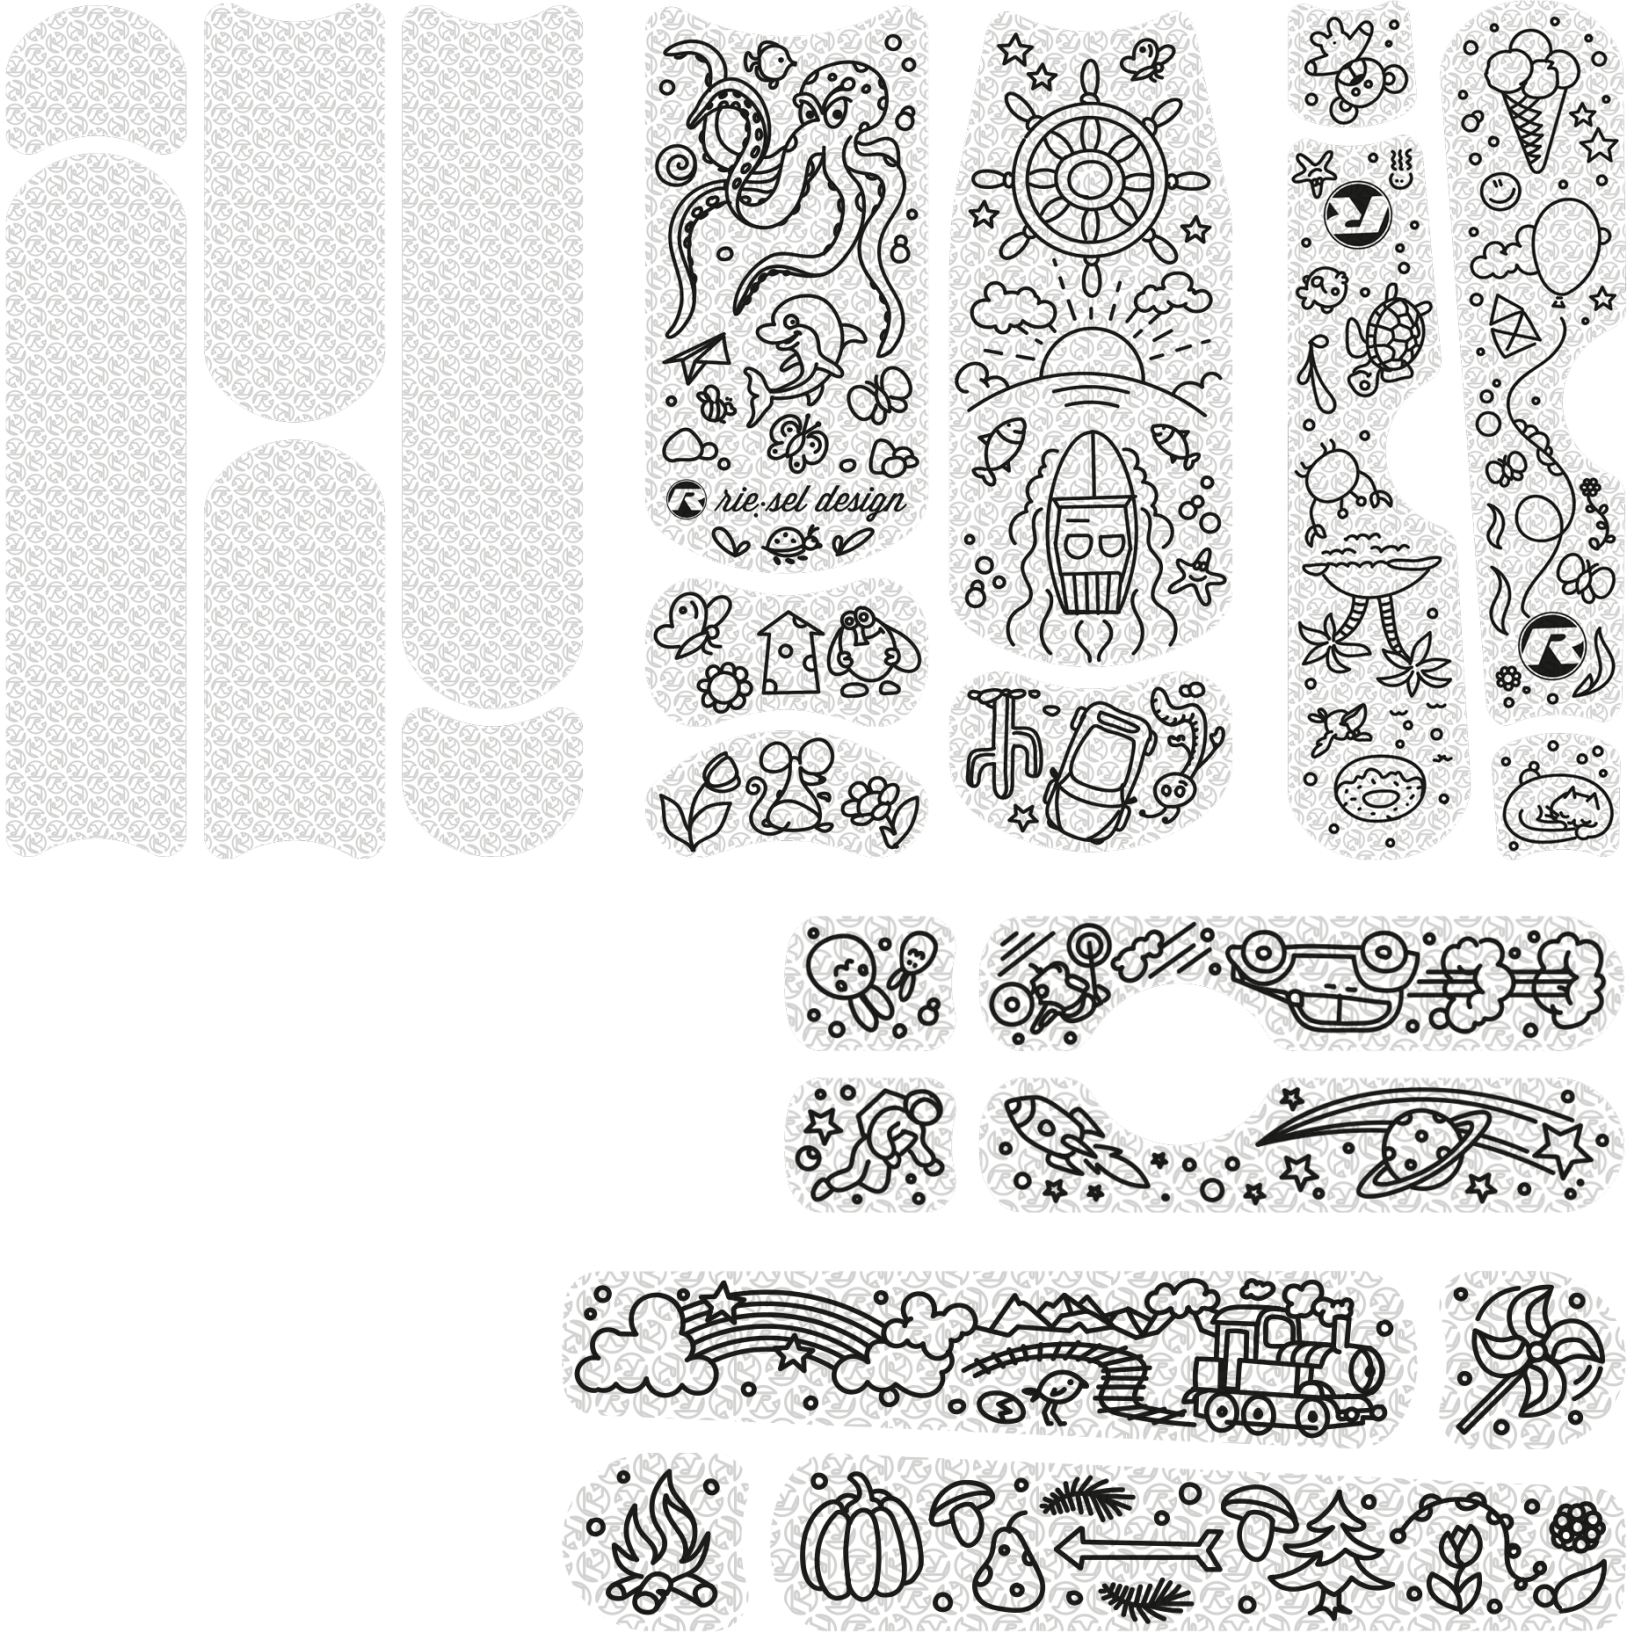 Produktbild von rie:sel design kids:tape Rahmenschutzfolie - kiddo doodle black